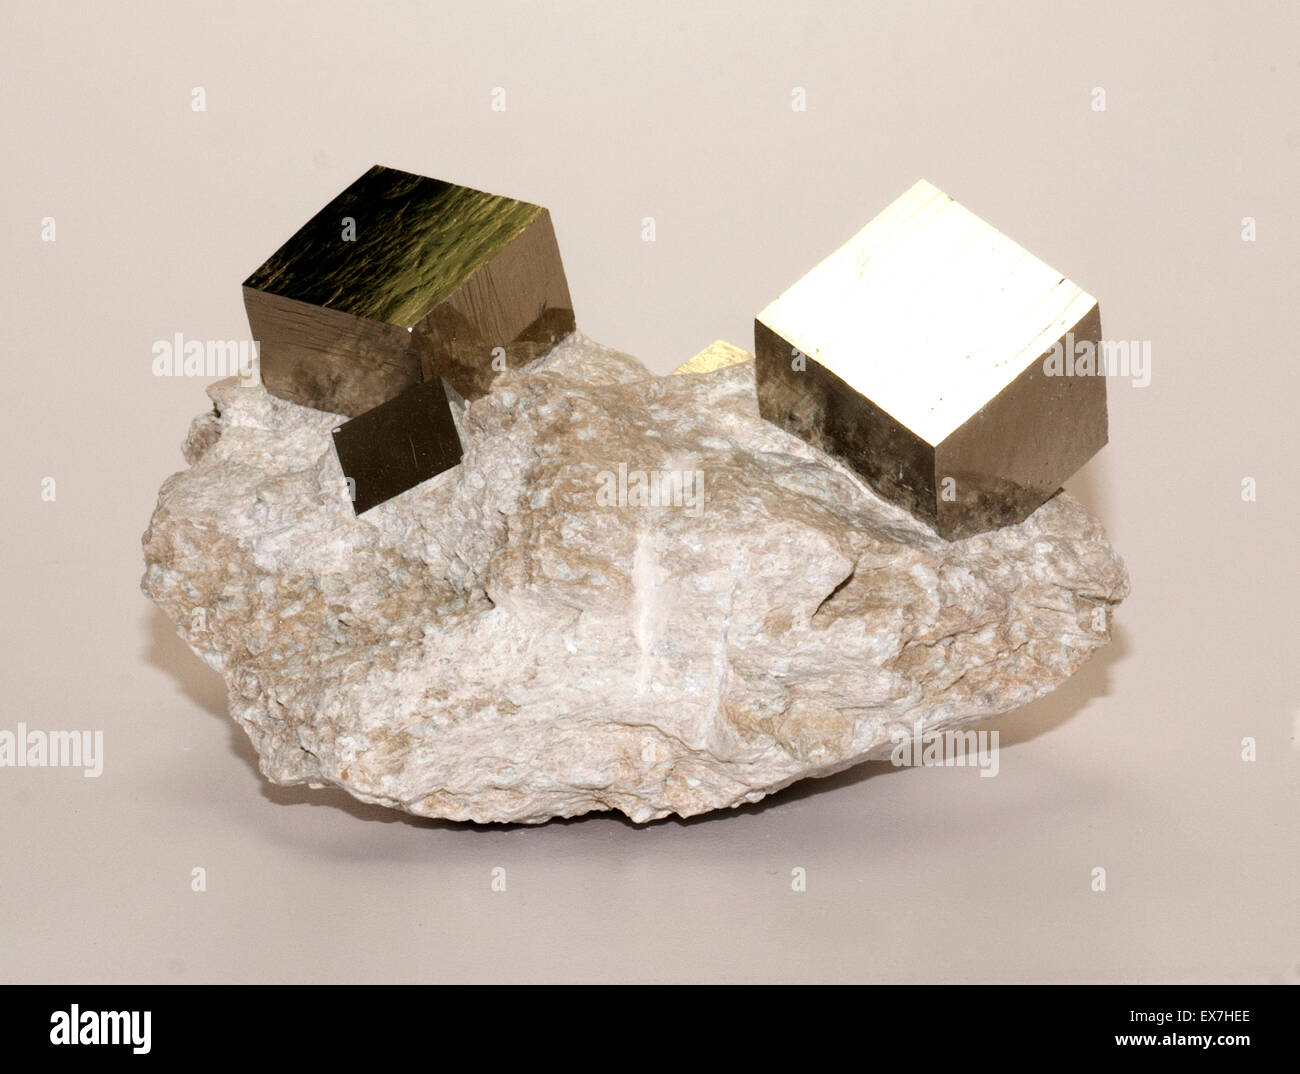 La pyrite de fer dans la matrice à cristaux cubiques Banque D'Images